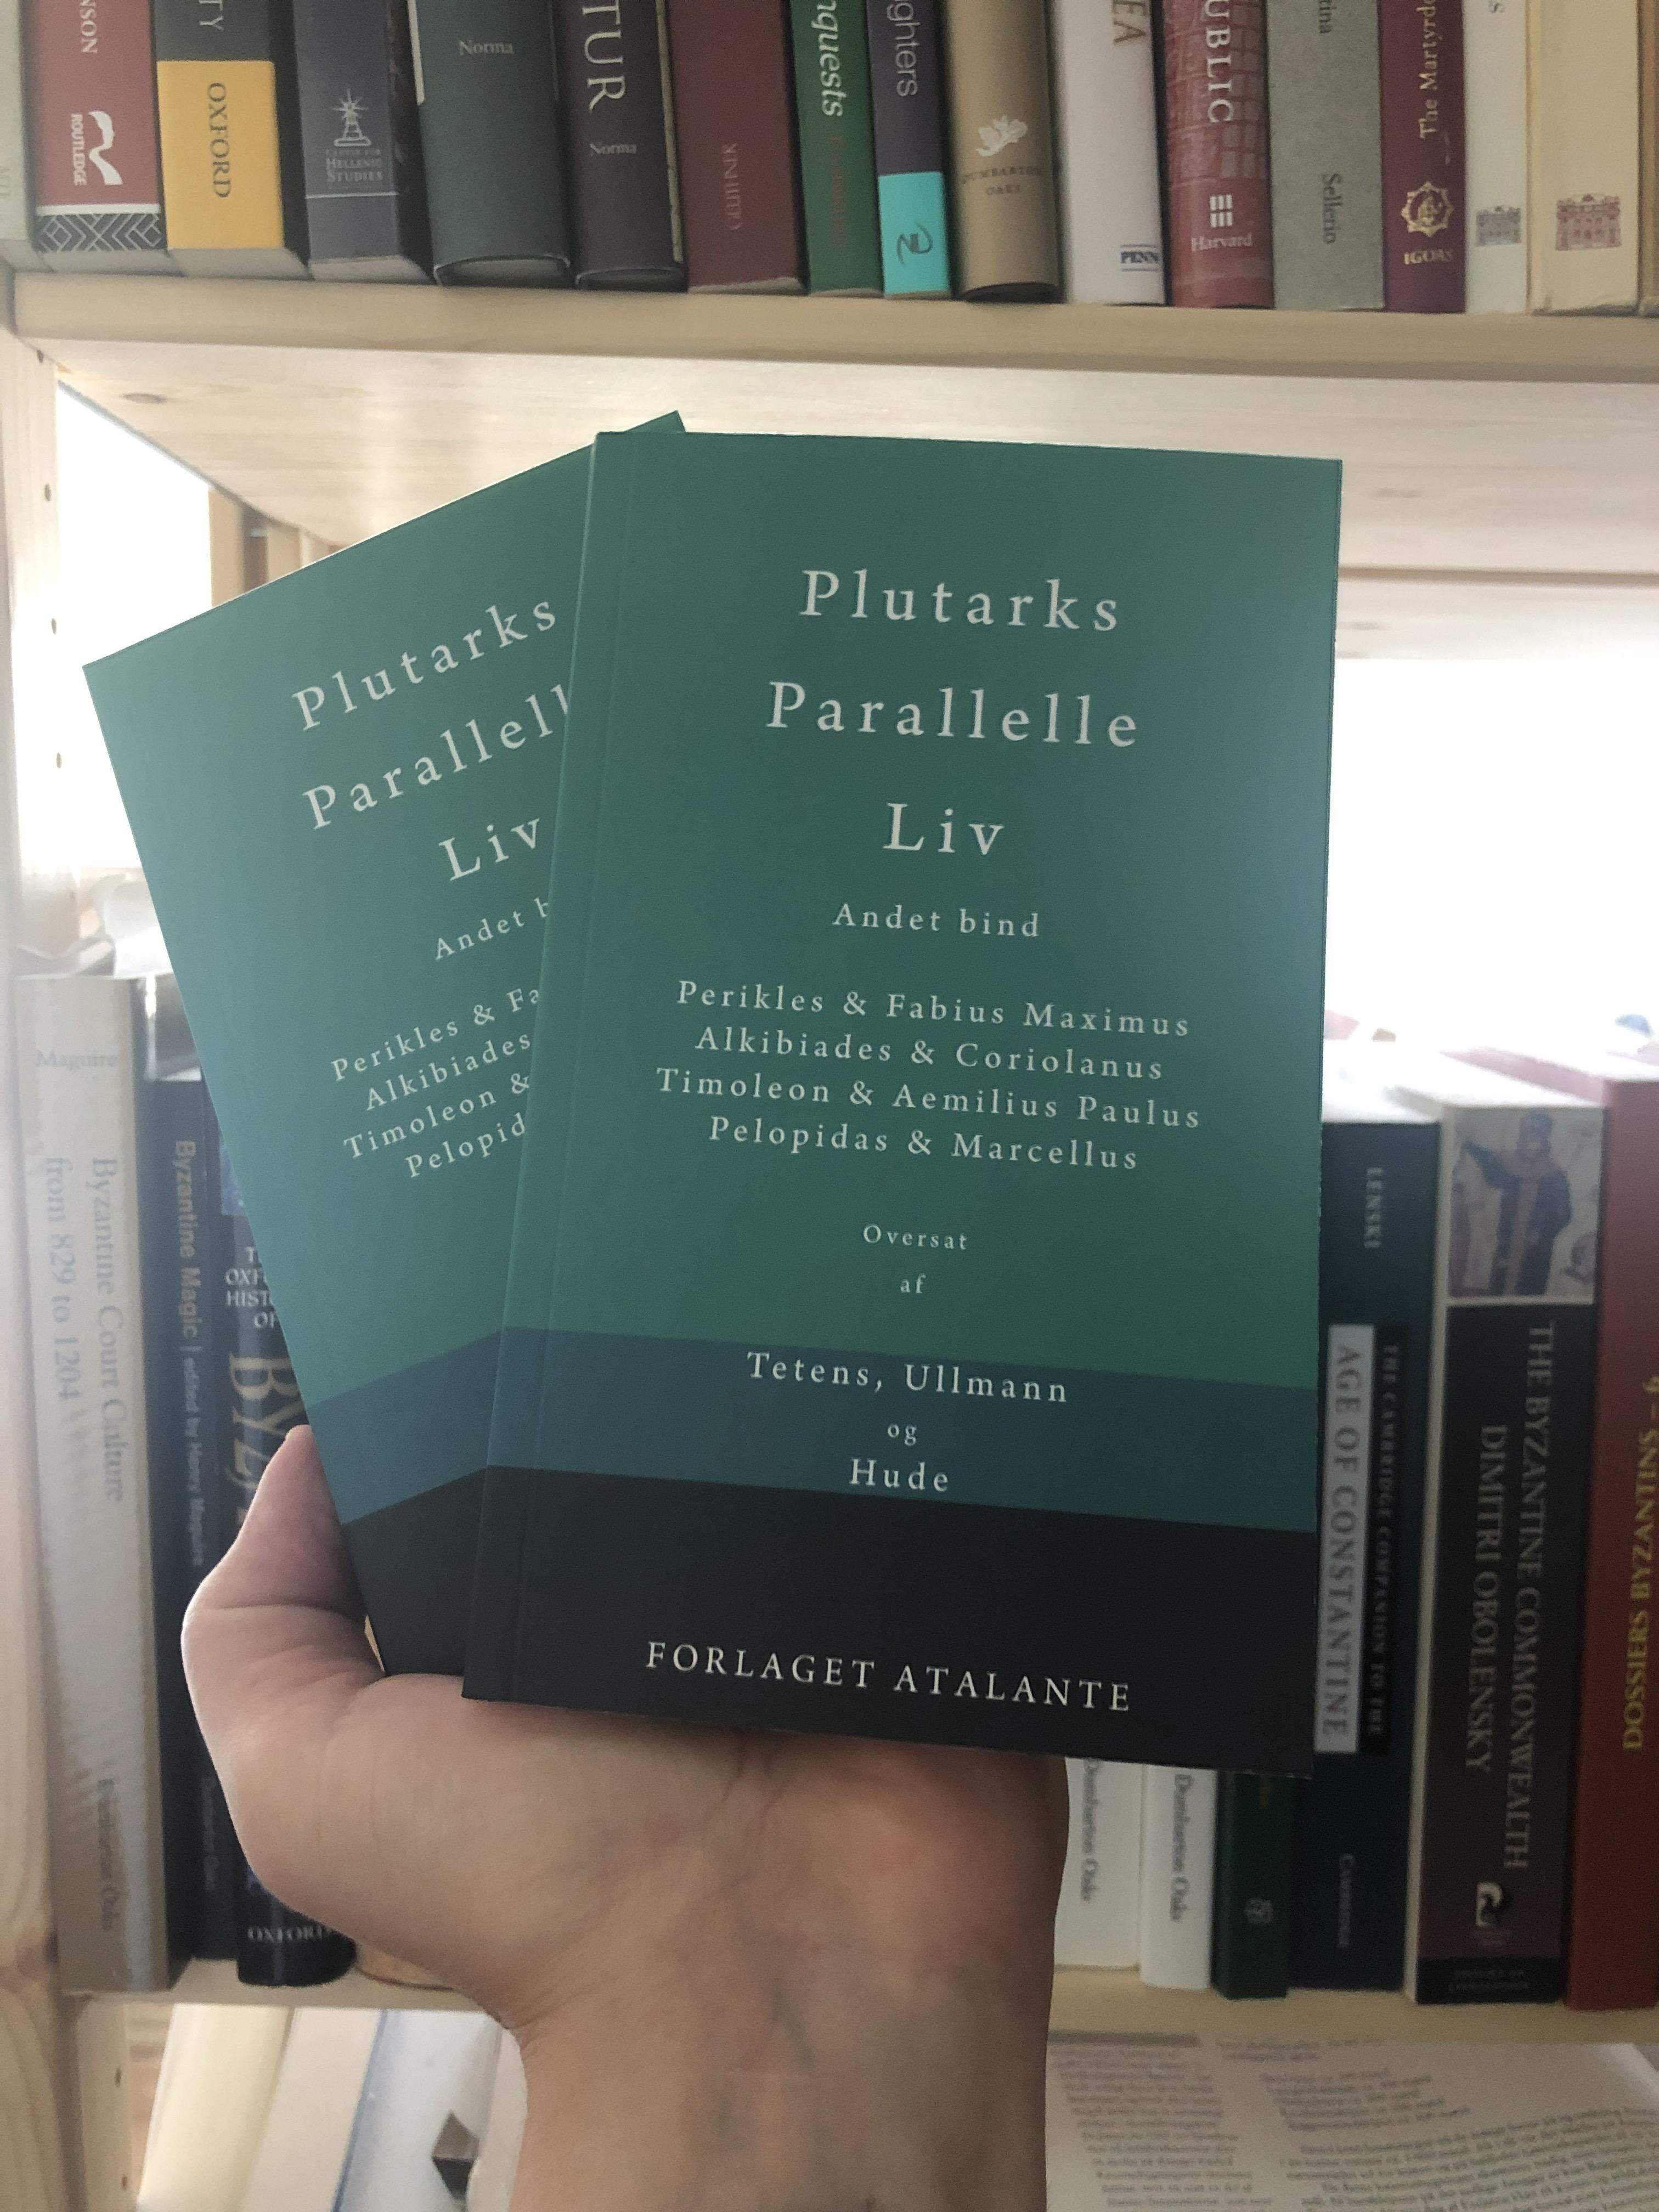 Plutarks Parallelle Liv 2